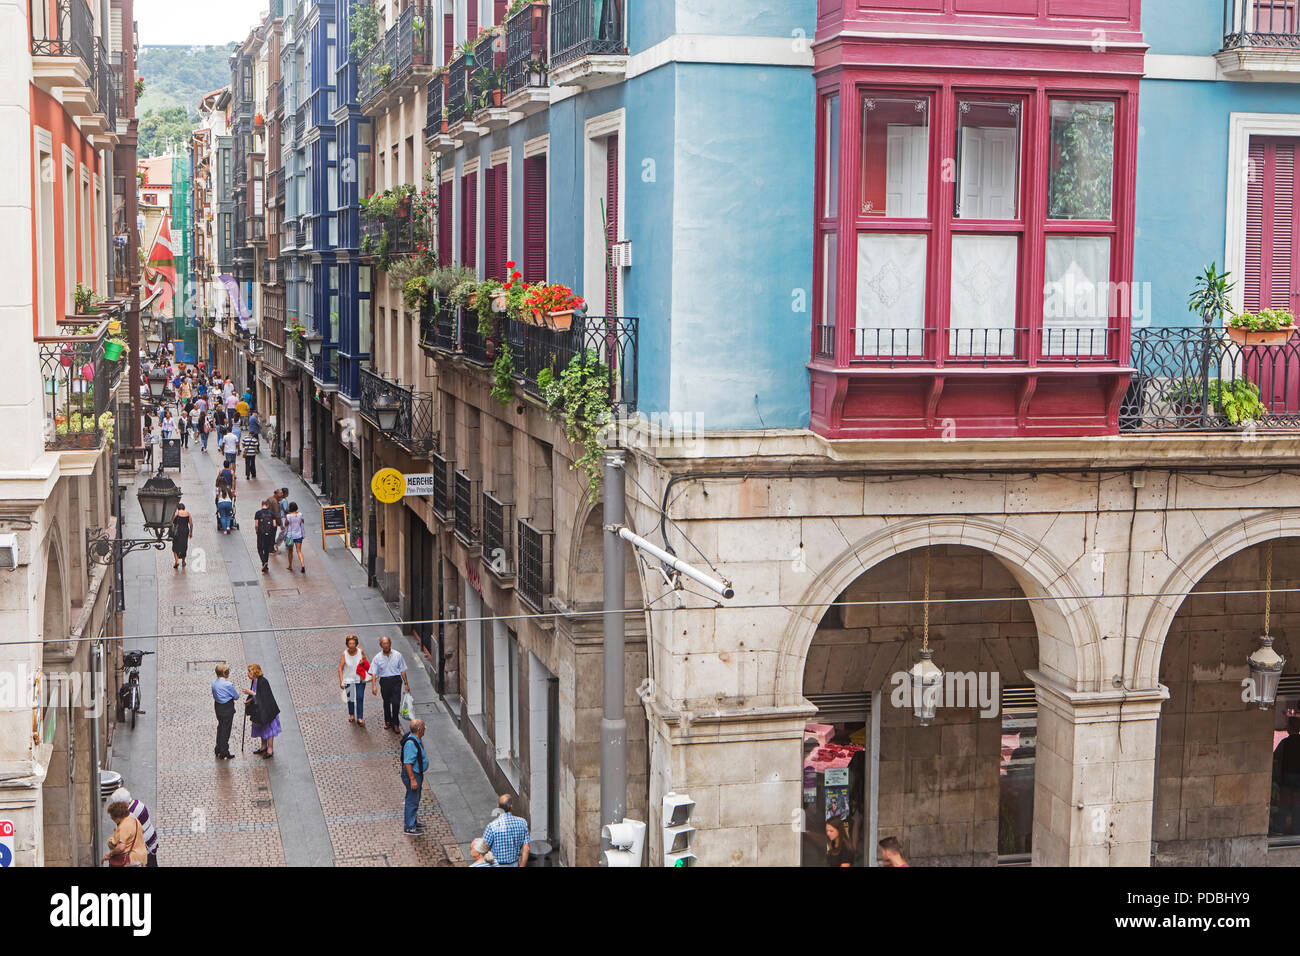 Architektur, traditionellen, klassischen, typischen, erribera Straße an der Calle de la Tenderia, Altstadt (Casco Viejo), Bilbao, Spanien Stockfoto